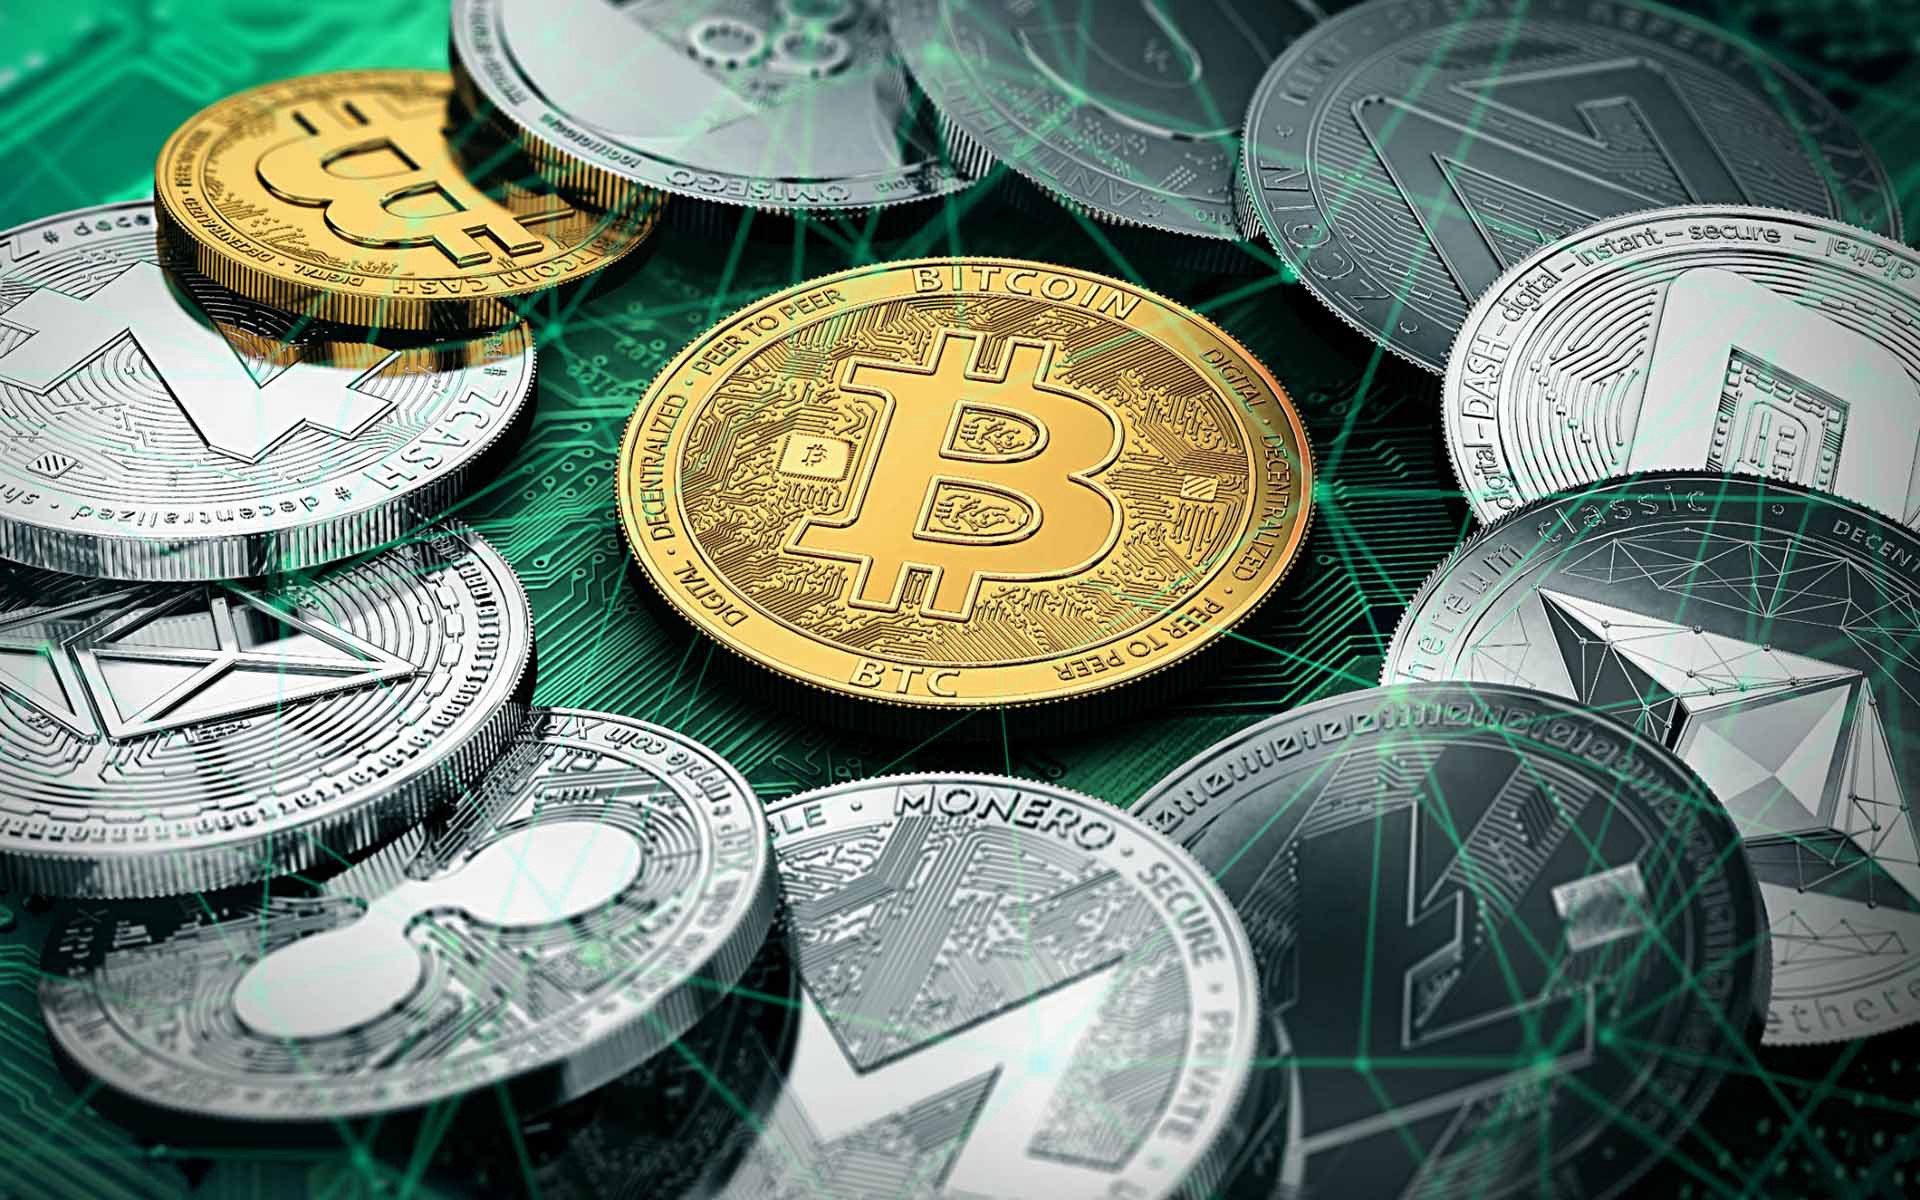 miért nem lehet kereskedni a bitcoin készpénzzel